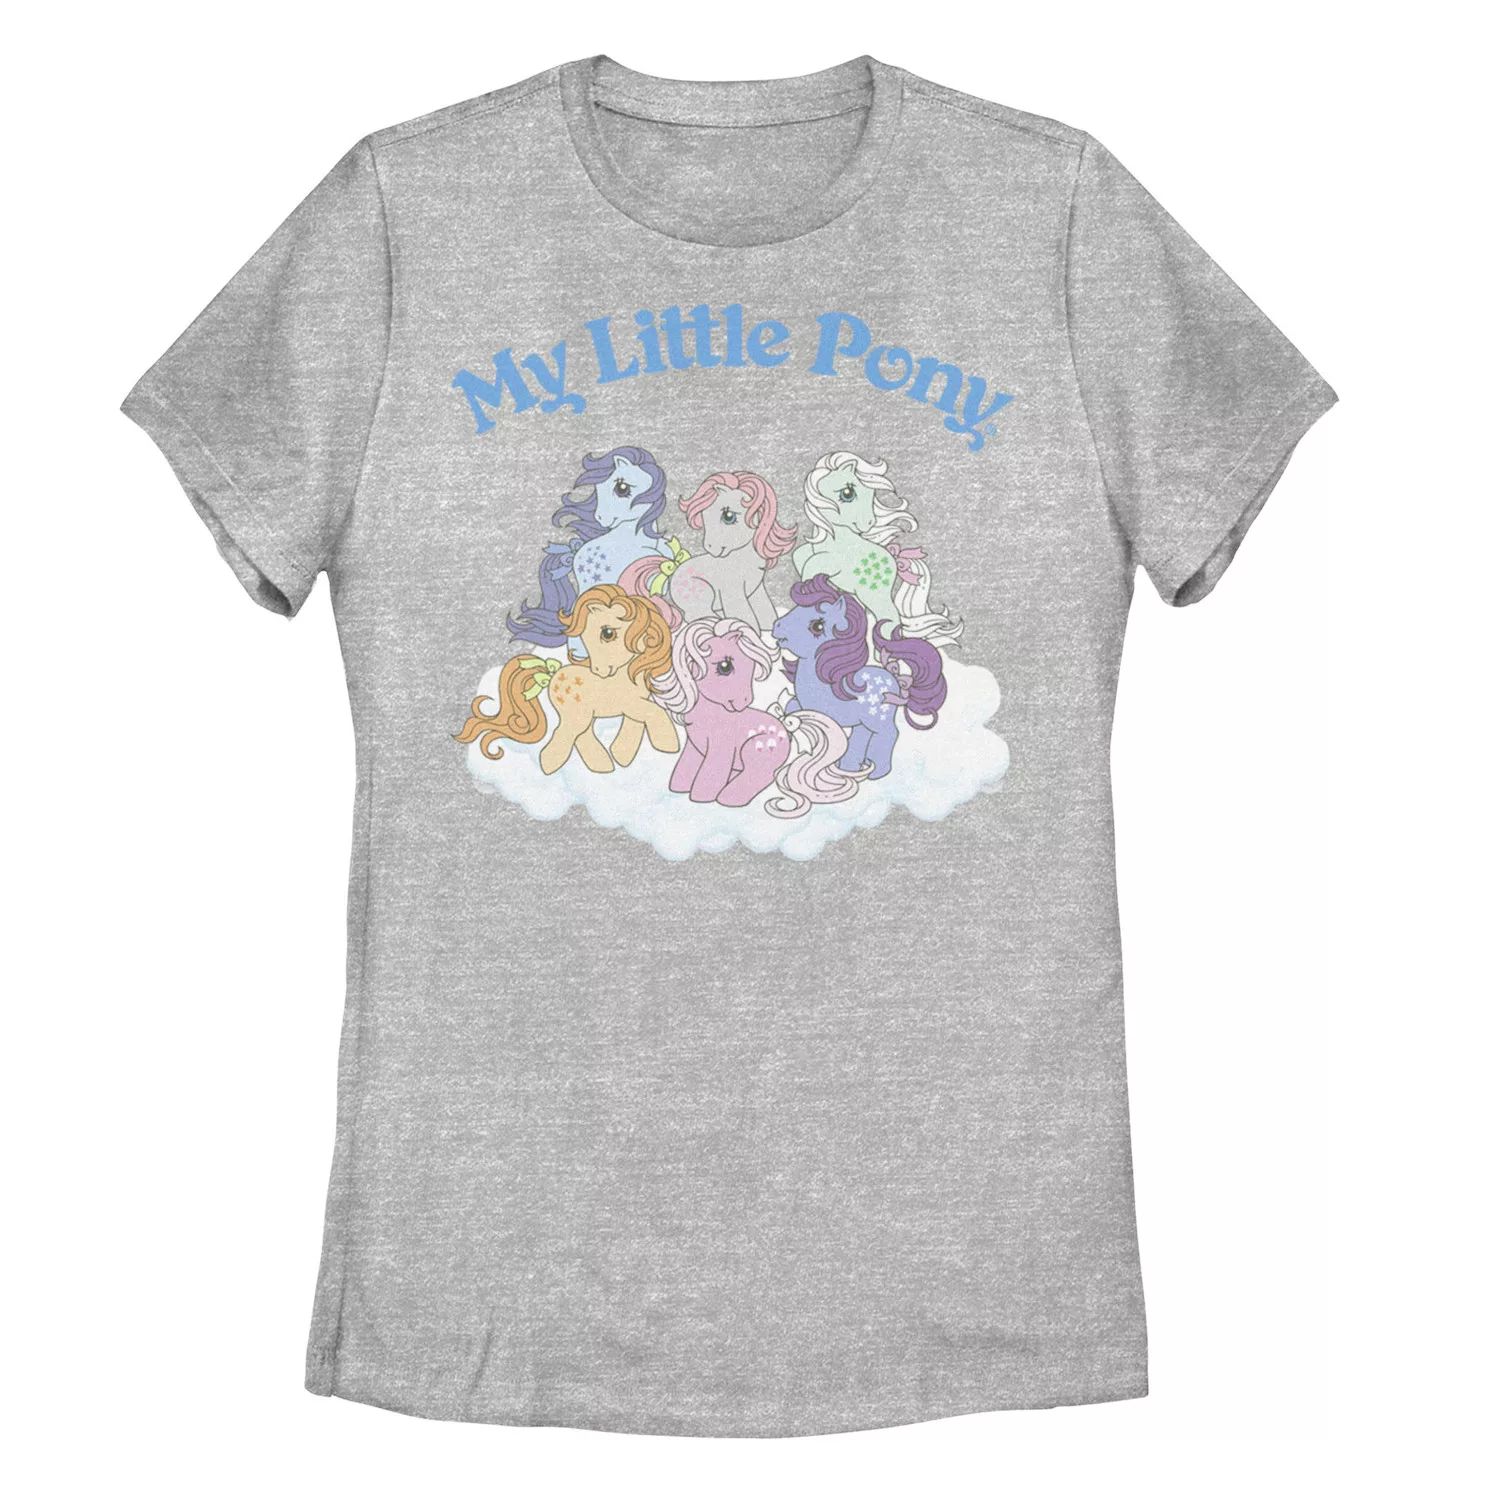 Детская классическая футболка с рисунком My Little Pony Group Shot My Little Pony анатомия футболки с рисунком пони my little pony для юниоров my little pony